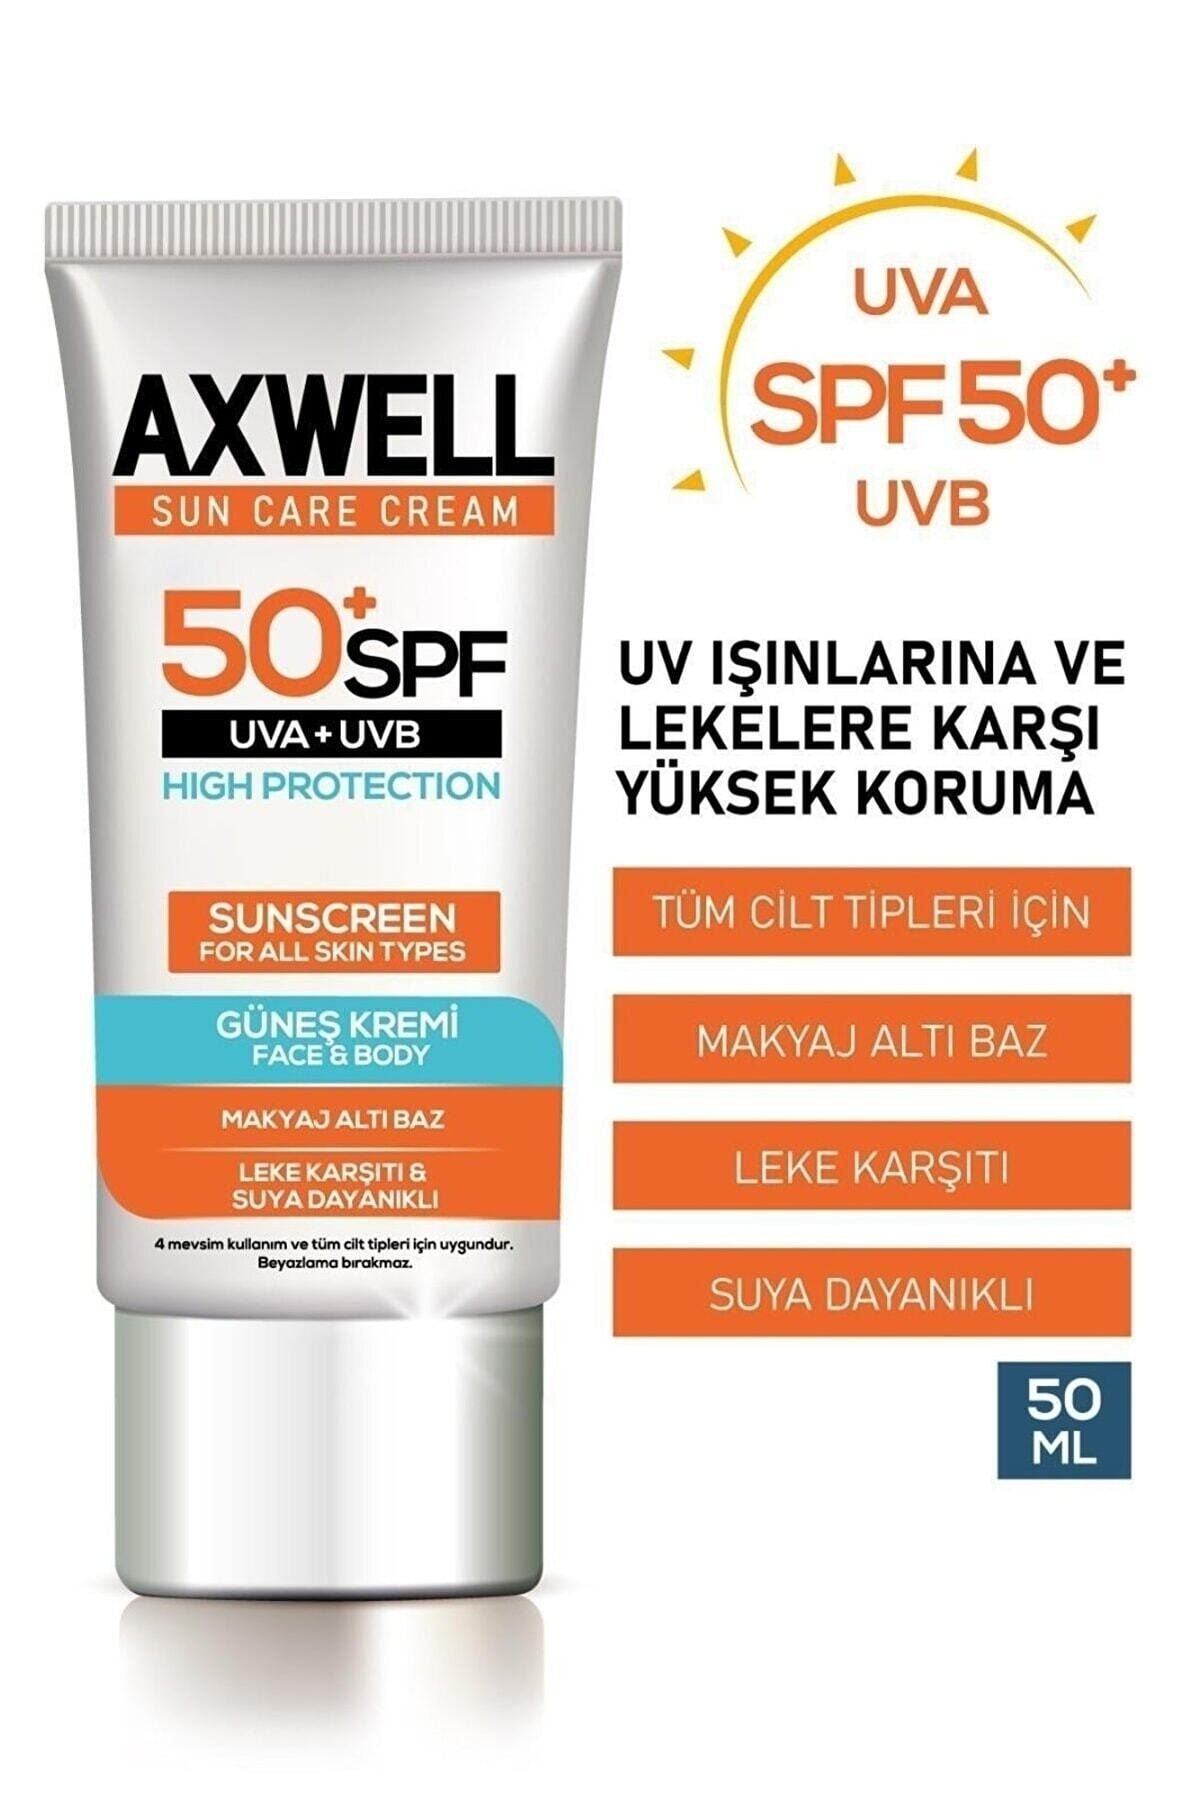 AXWELL Sun Care Cream Leke Karşıtı Güneş Kremi Çok Yüksek Koruma 50+ Spf 50 ml